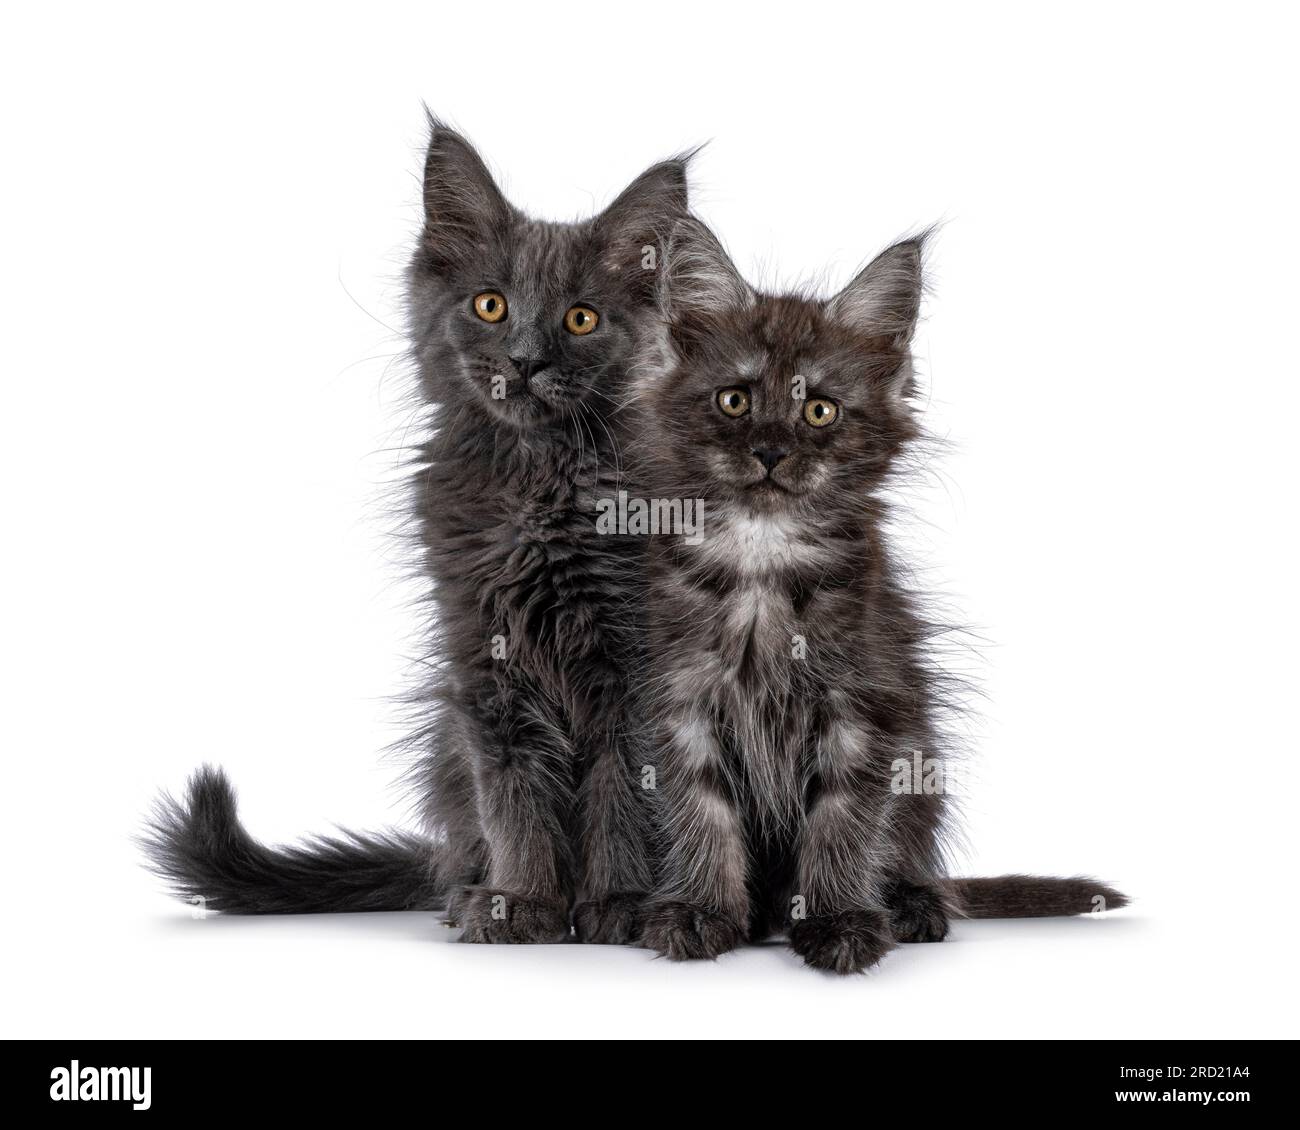 2 chatons de chat Maine Coon, assis ensemble face à l'avant. Regarder vers la caméra. Isolé sur fond blanc. Banque D'Images